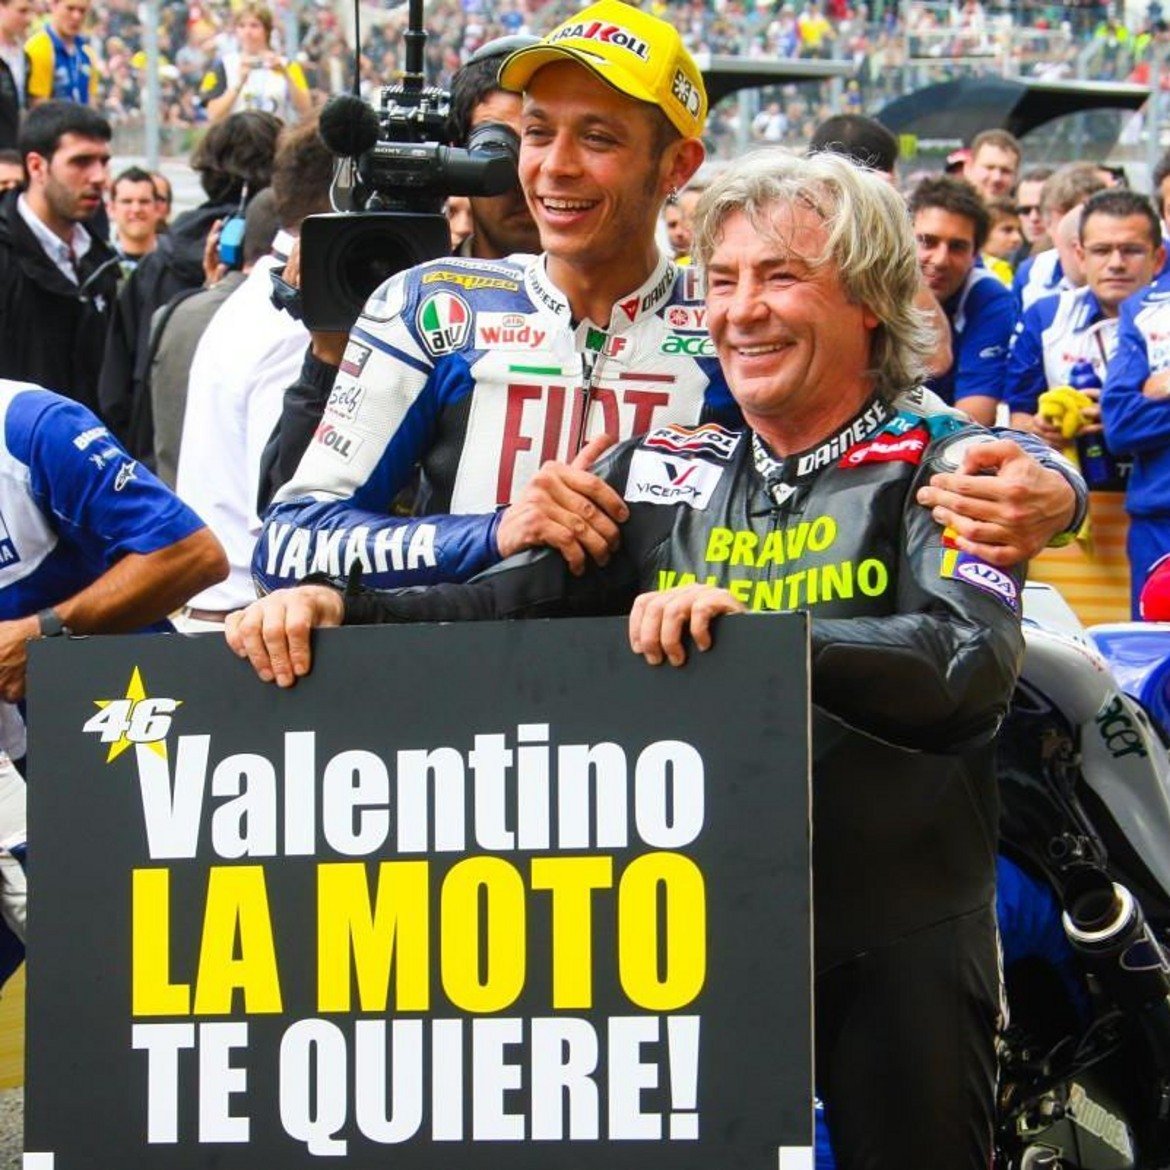 Валентино Роси е сред малцината с повече победи в MotoGP от Нието и сред мнозината мото-легенди, които изказаха съболезнованията си след скръбната вест. Двамата се появиха на един мотоциклет, пилотиран от испанеца, след състезанието, в което Доктора изравни постижението му от 90 успеха на пистата - те държаха надпис 90+90.